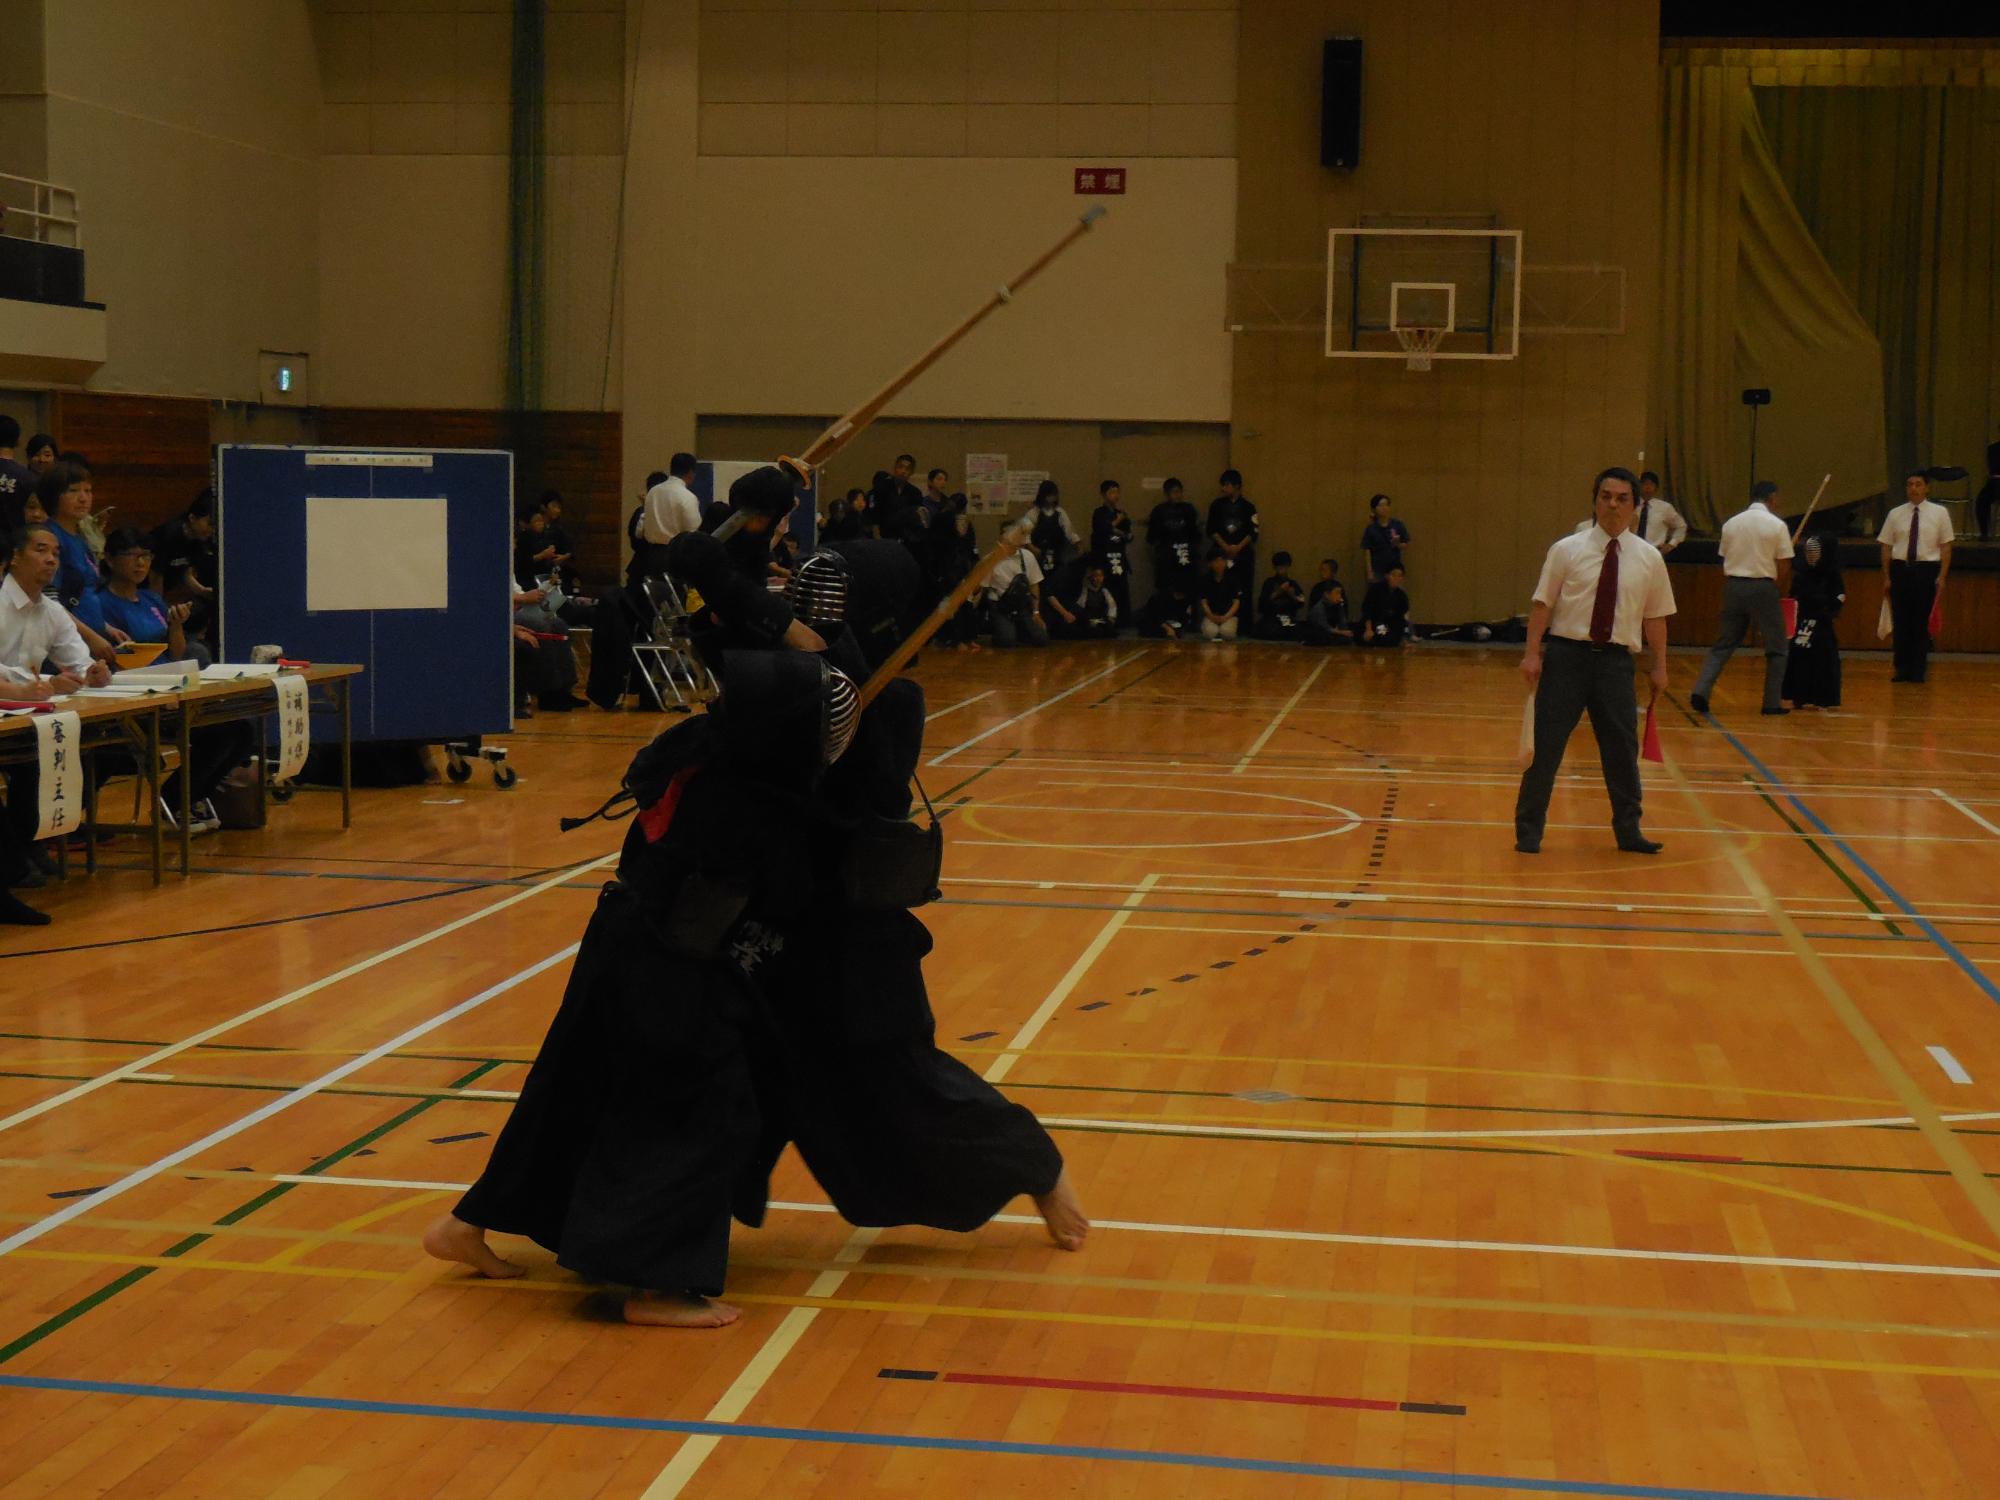 体育館で、竹刀を手にした子どもたちが剣道の試合を行っている写真